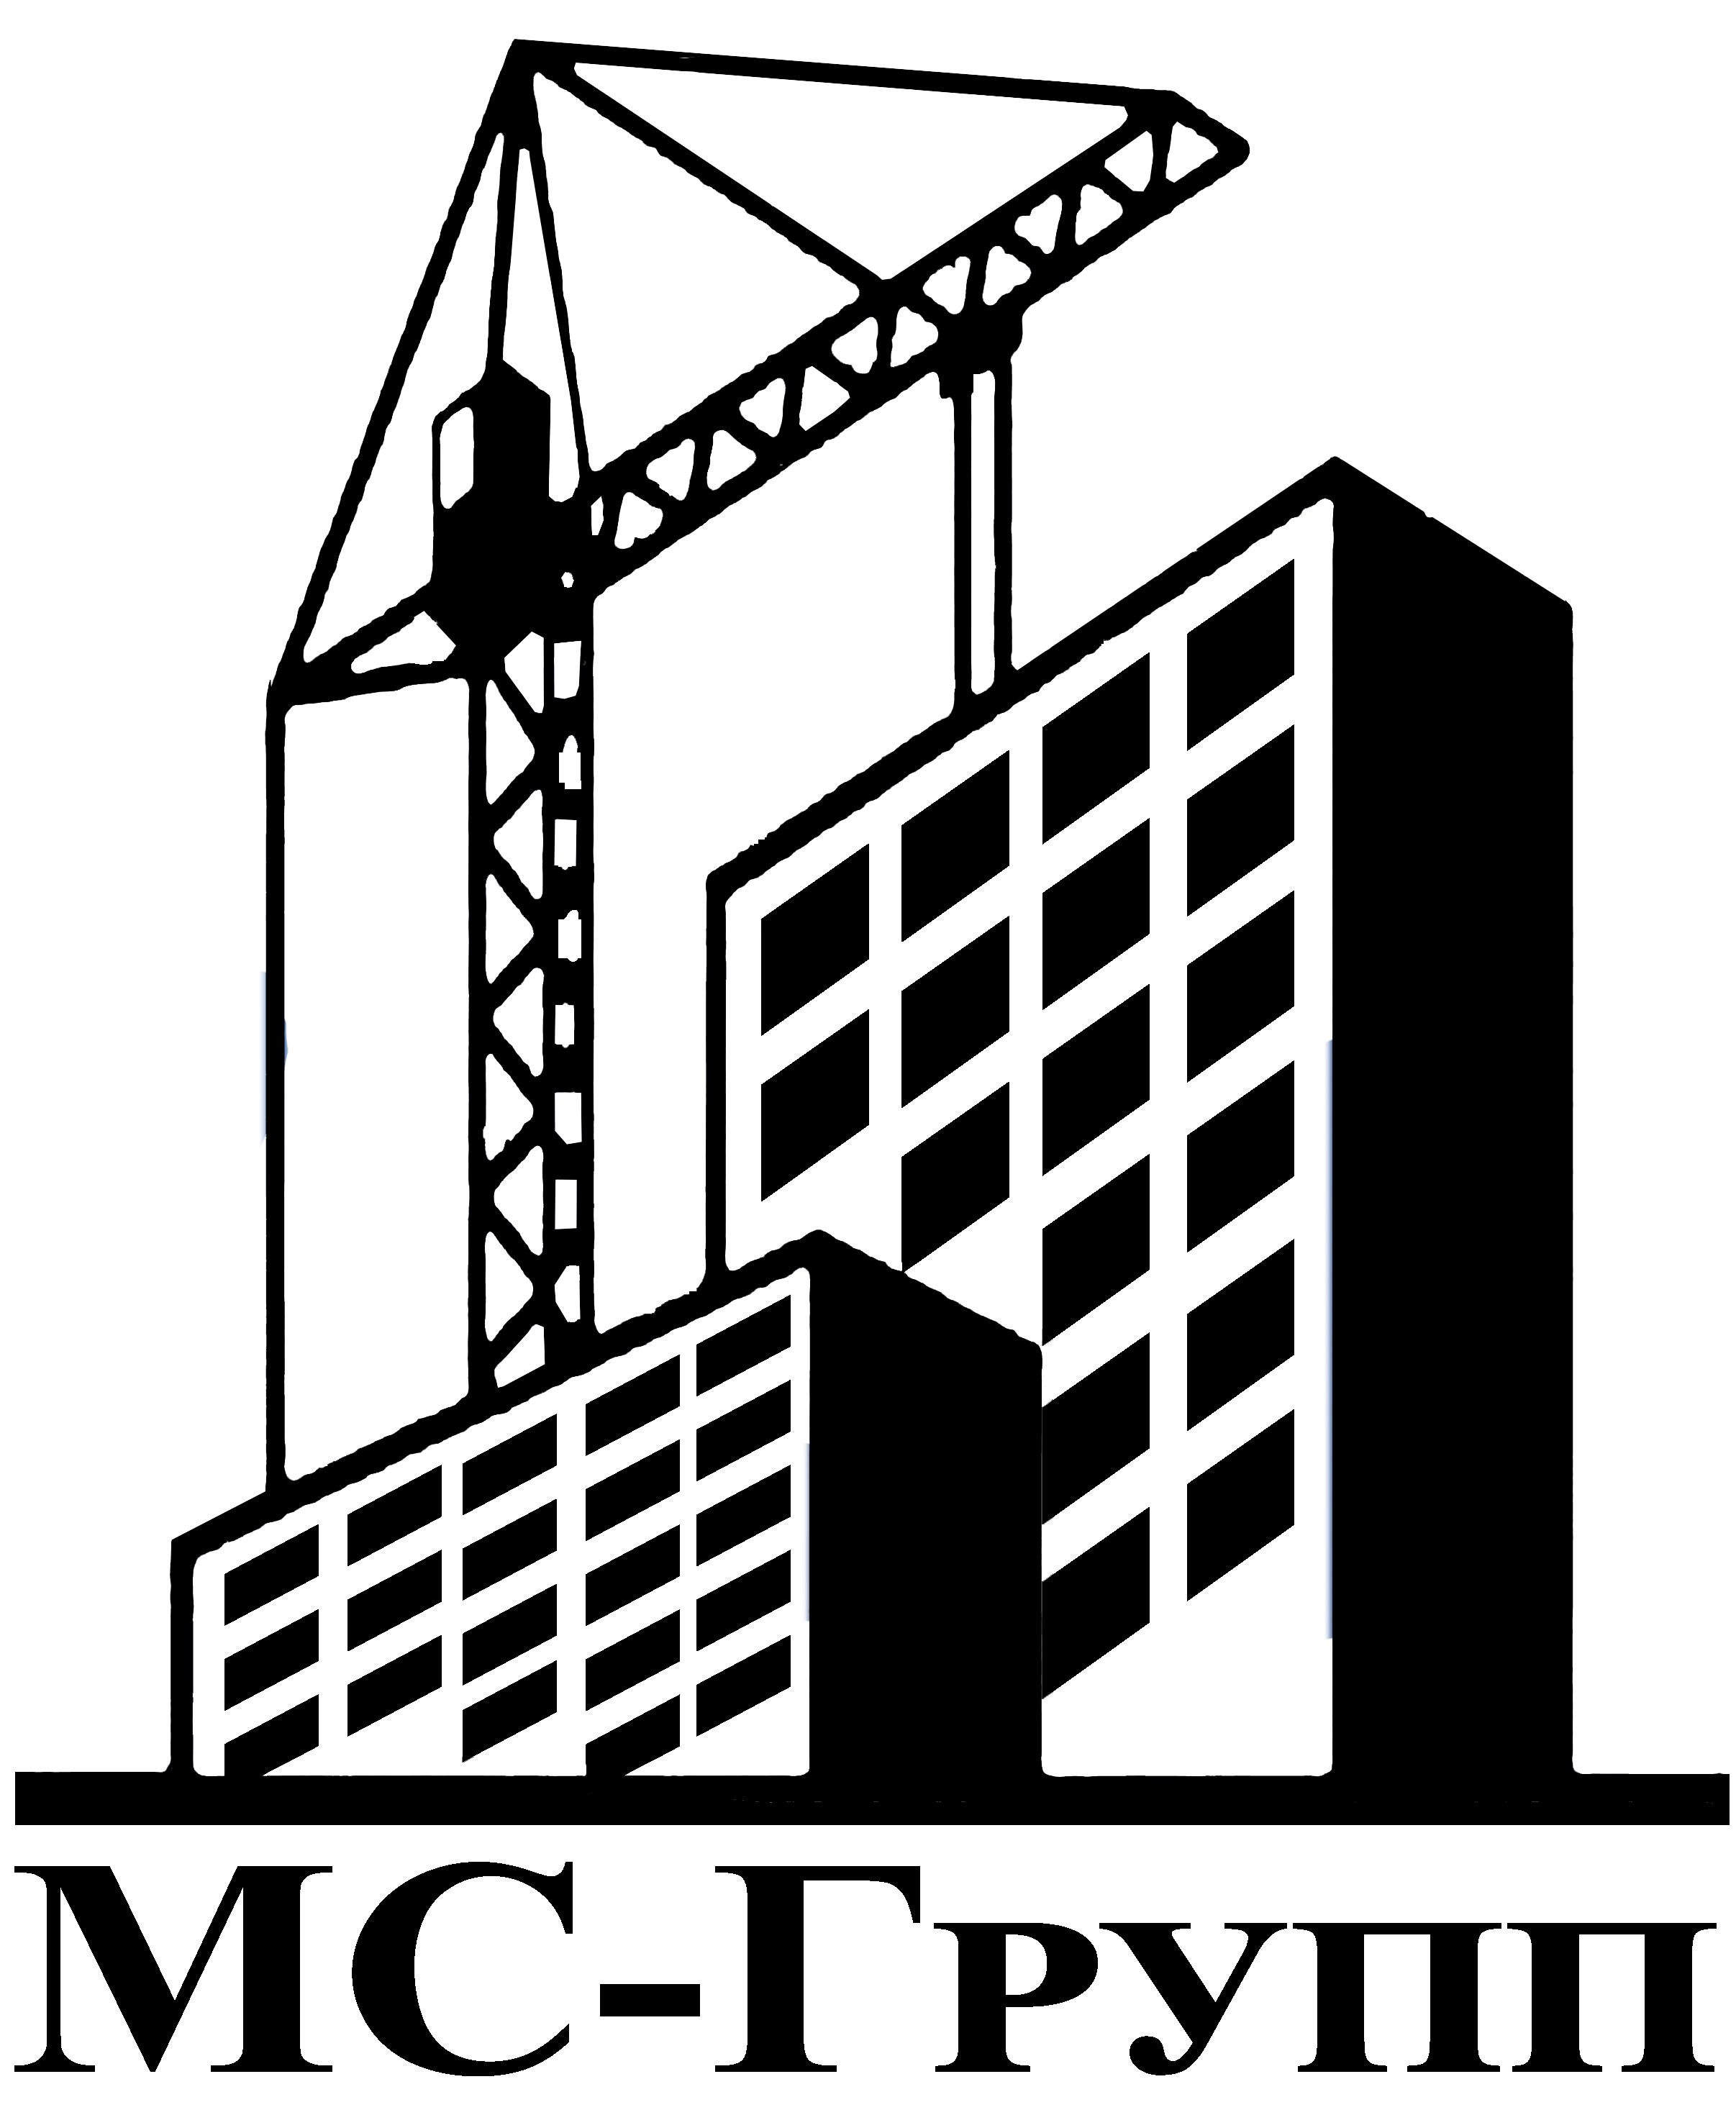 Телефон строительной организации. Логотип строительной компании. Эмблема строительной организации. Значок для строительной фирмы. Логотипы фирм строительных компаний.